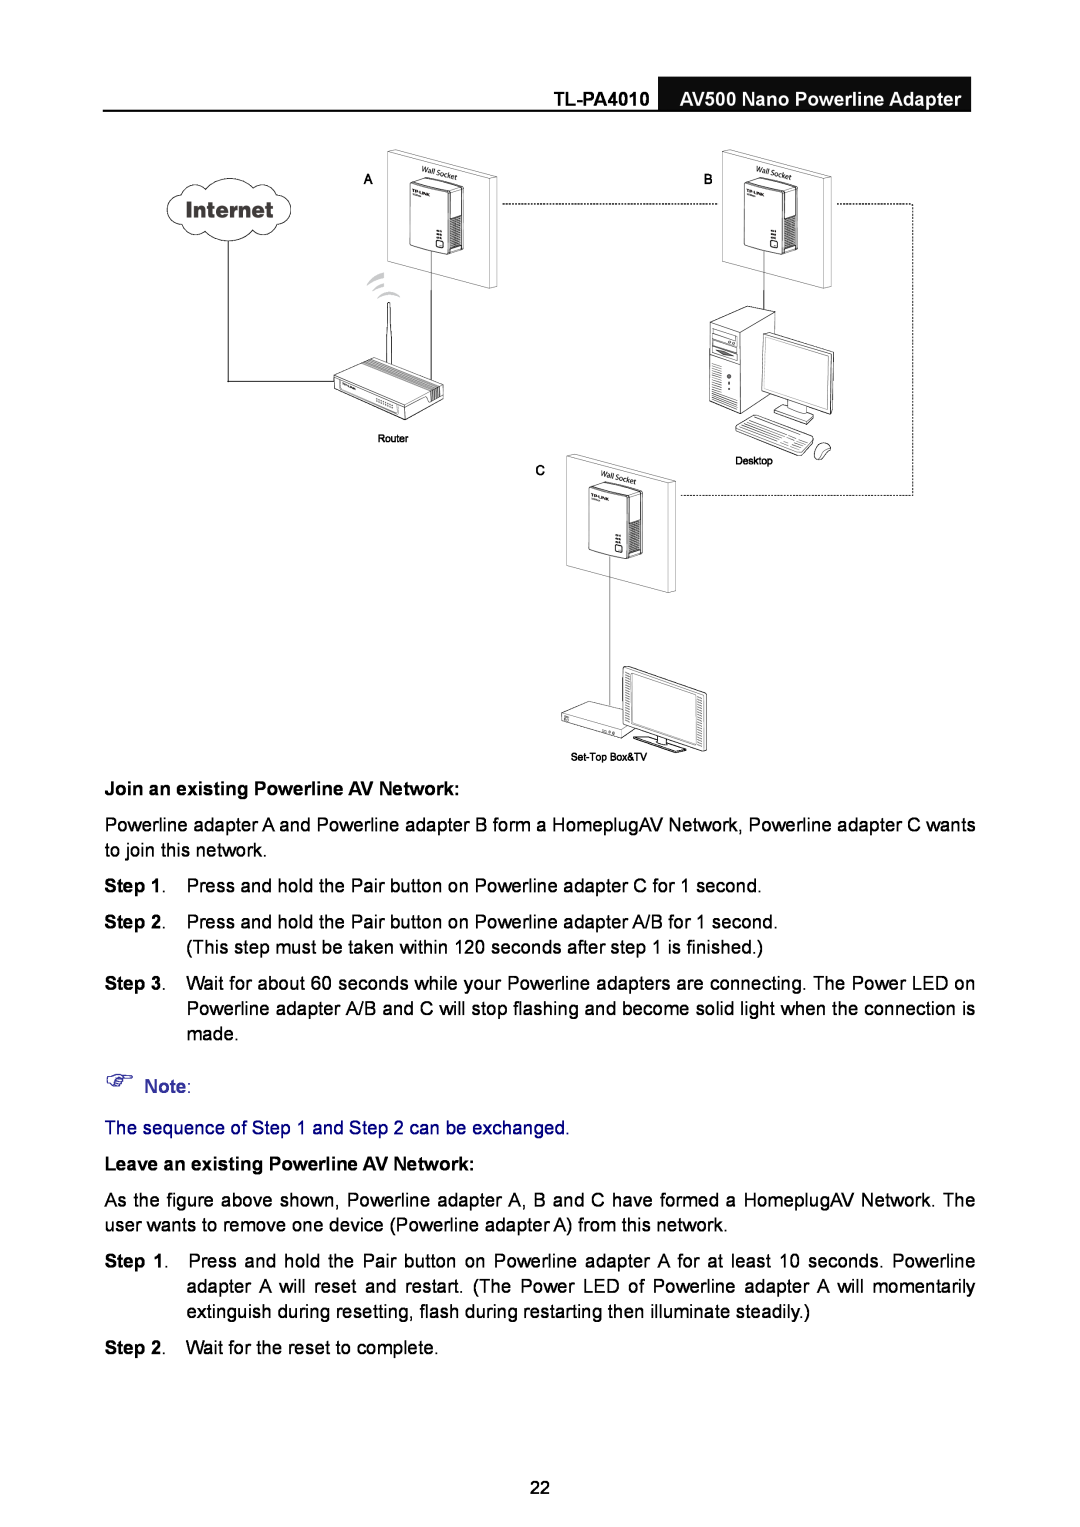 TP-Link manual TL-PA4010 AV500 Nano Powerline Adapter, Join an existing Powerline AV Network,  Note 